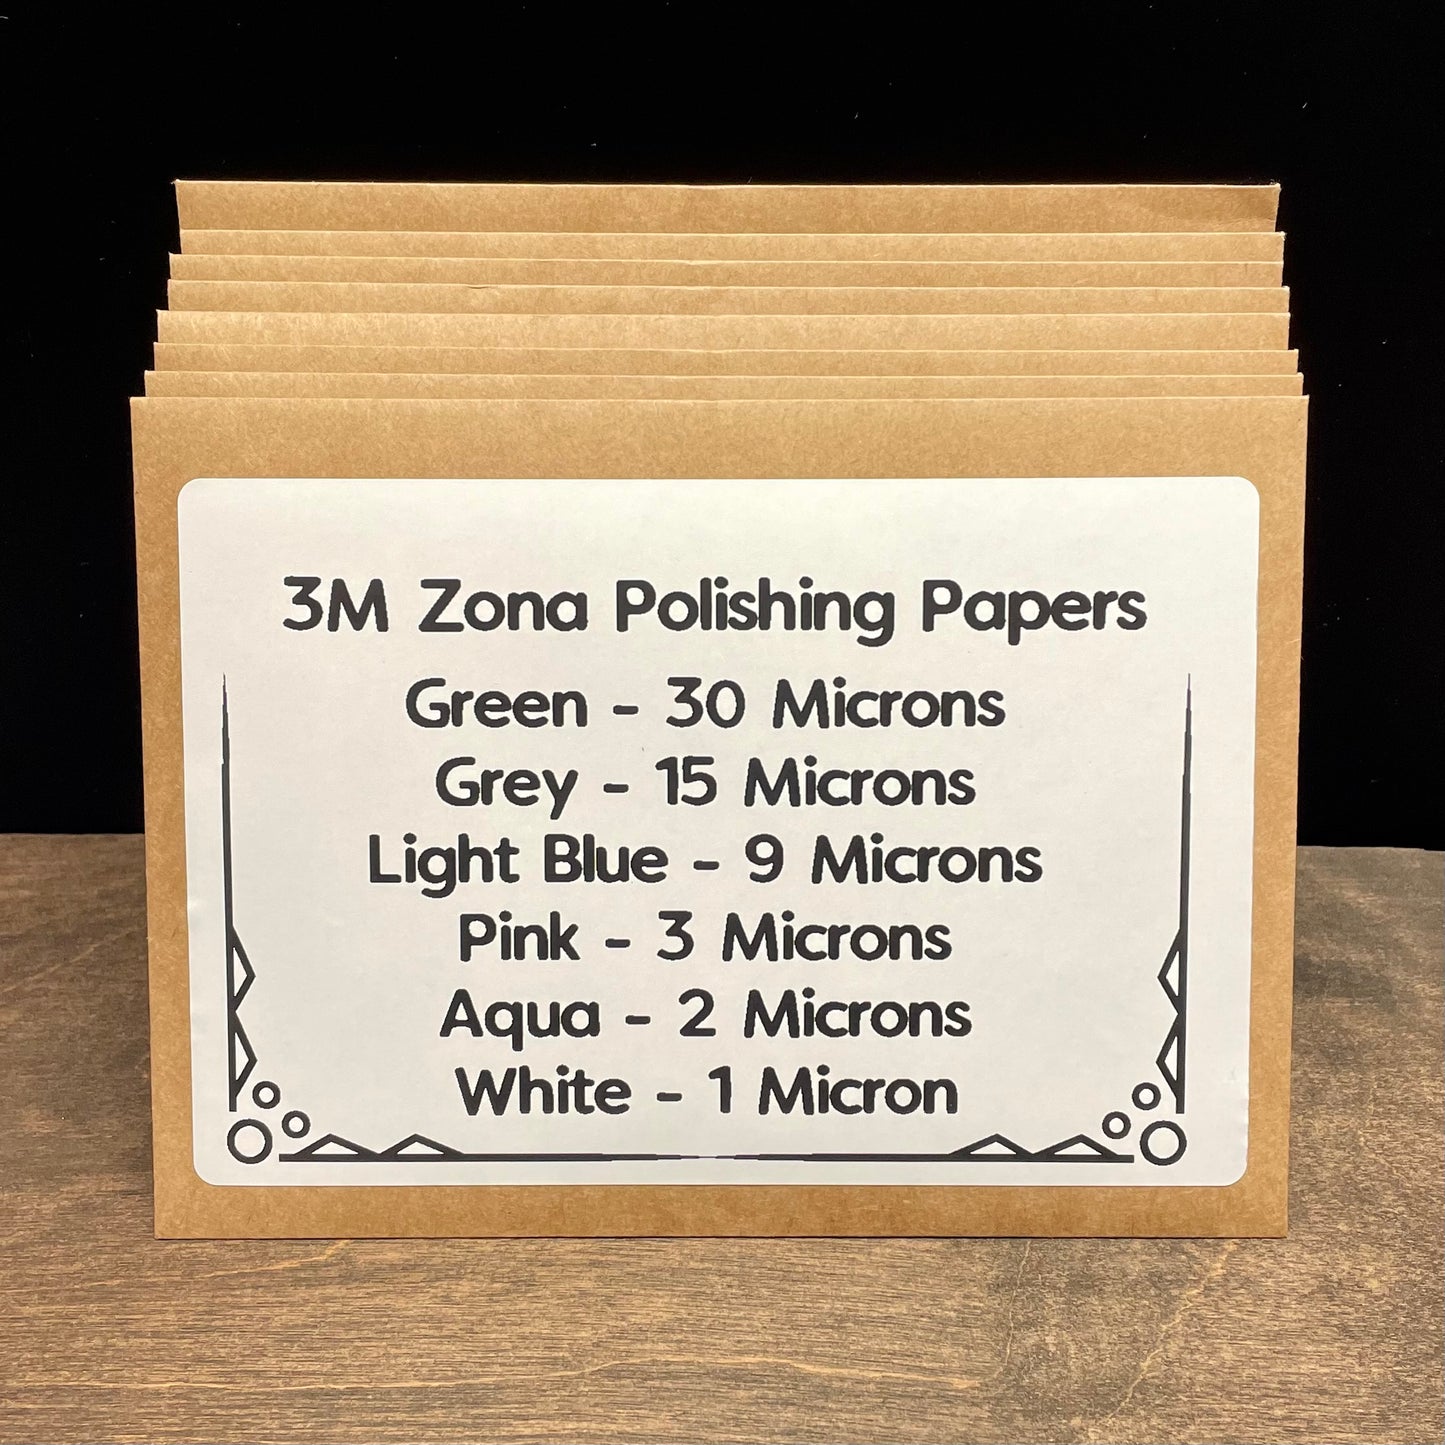 3M Zona Polishing Papers